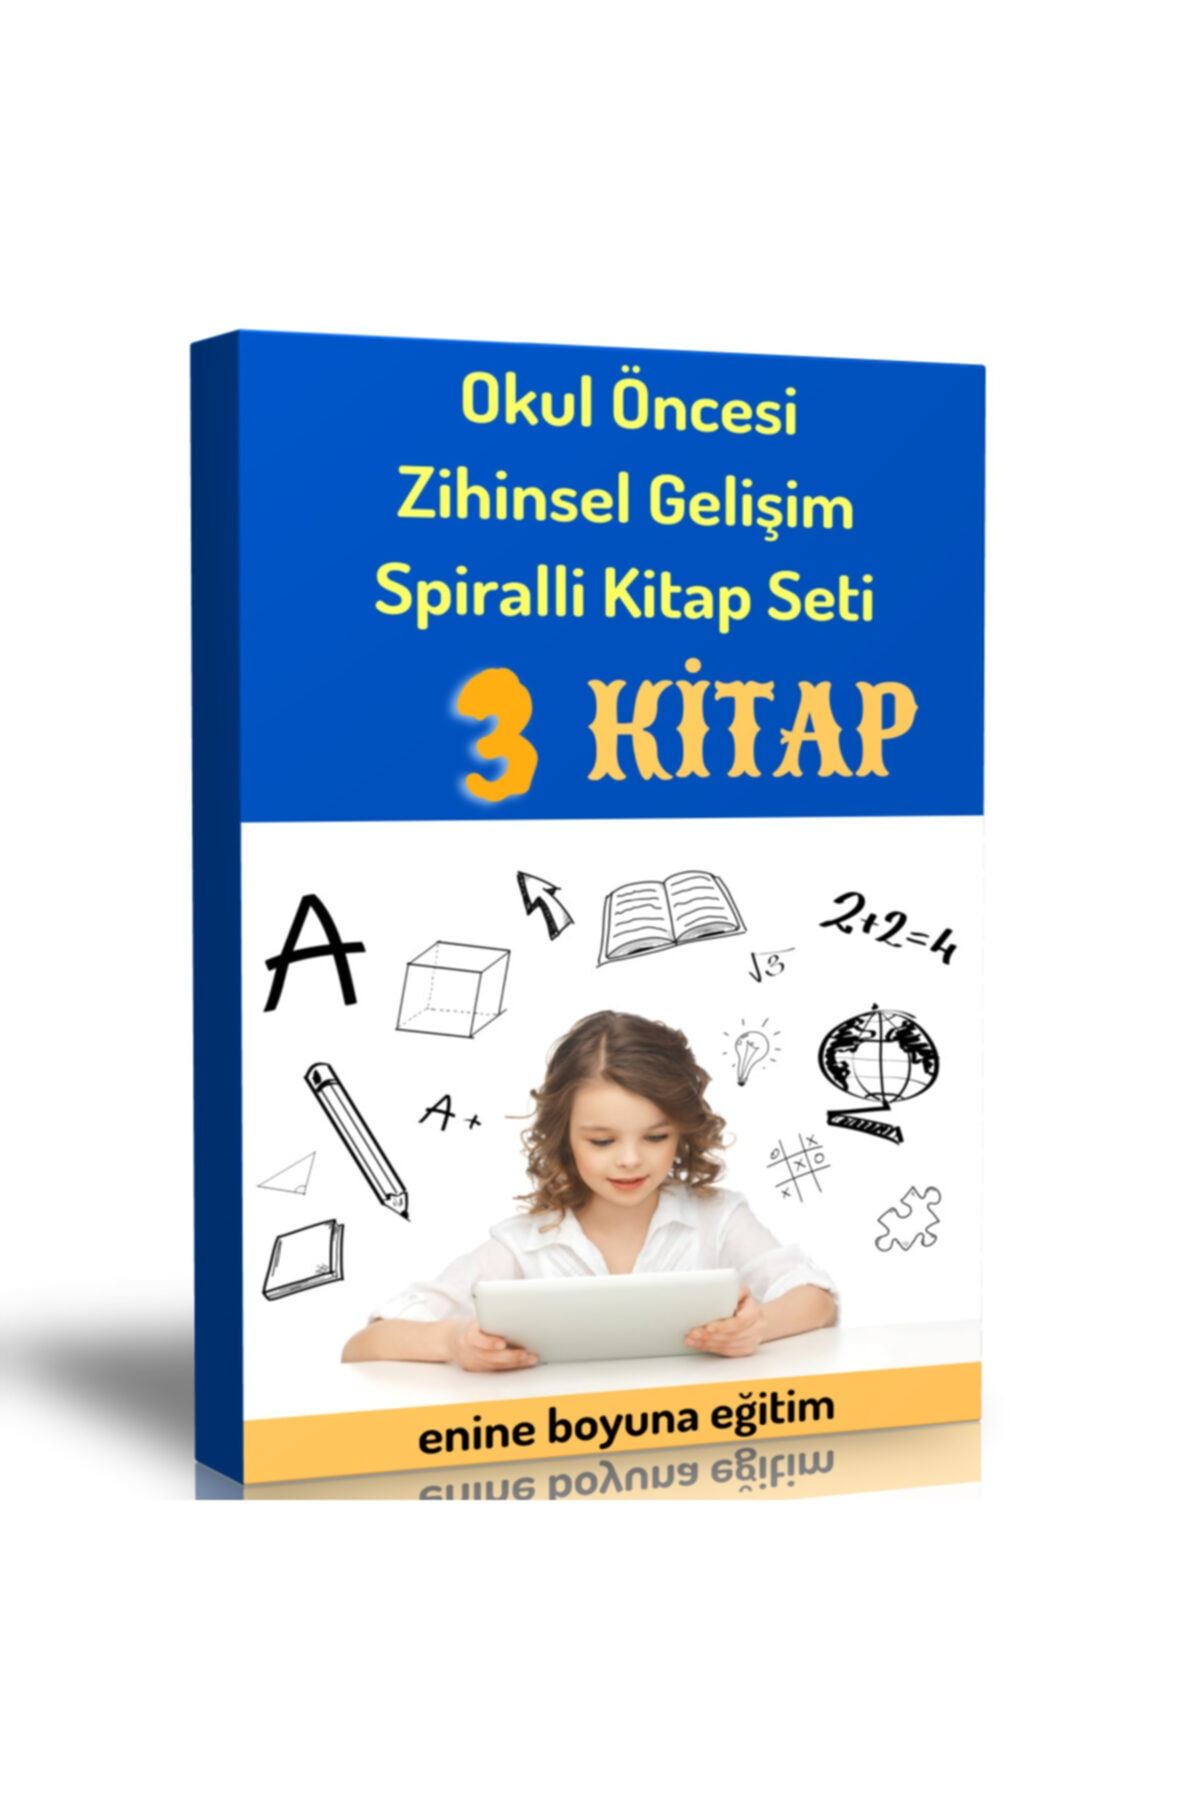 Enine Boyuna Eğitim Okul Öncesi Zihinsel Gelişim Spiralli Kitap Seti (3 Spiralli Kitap)